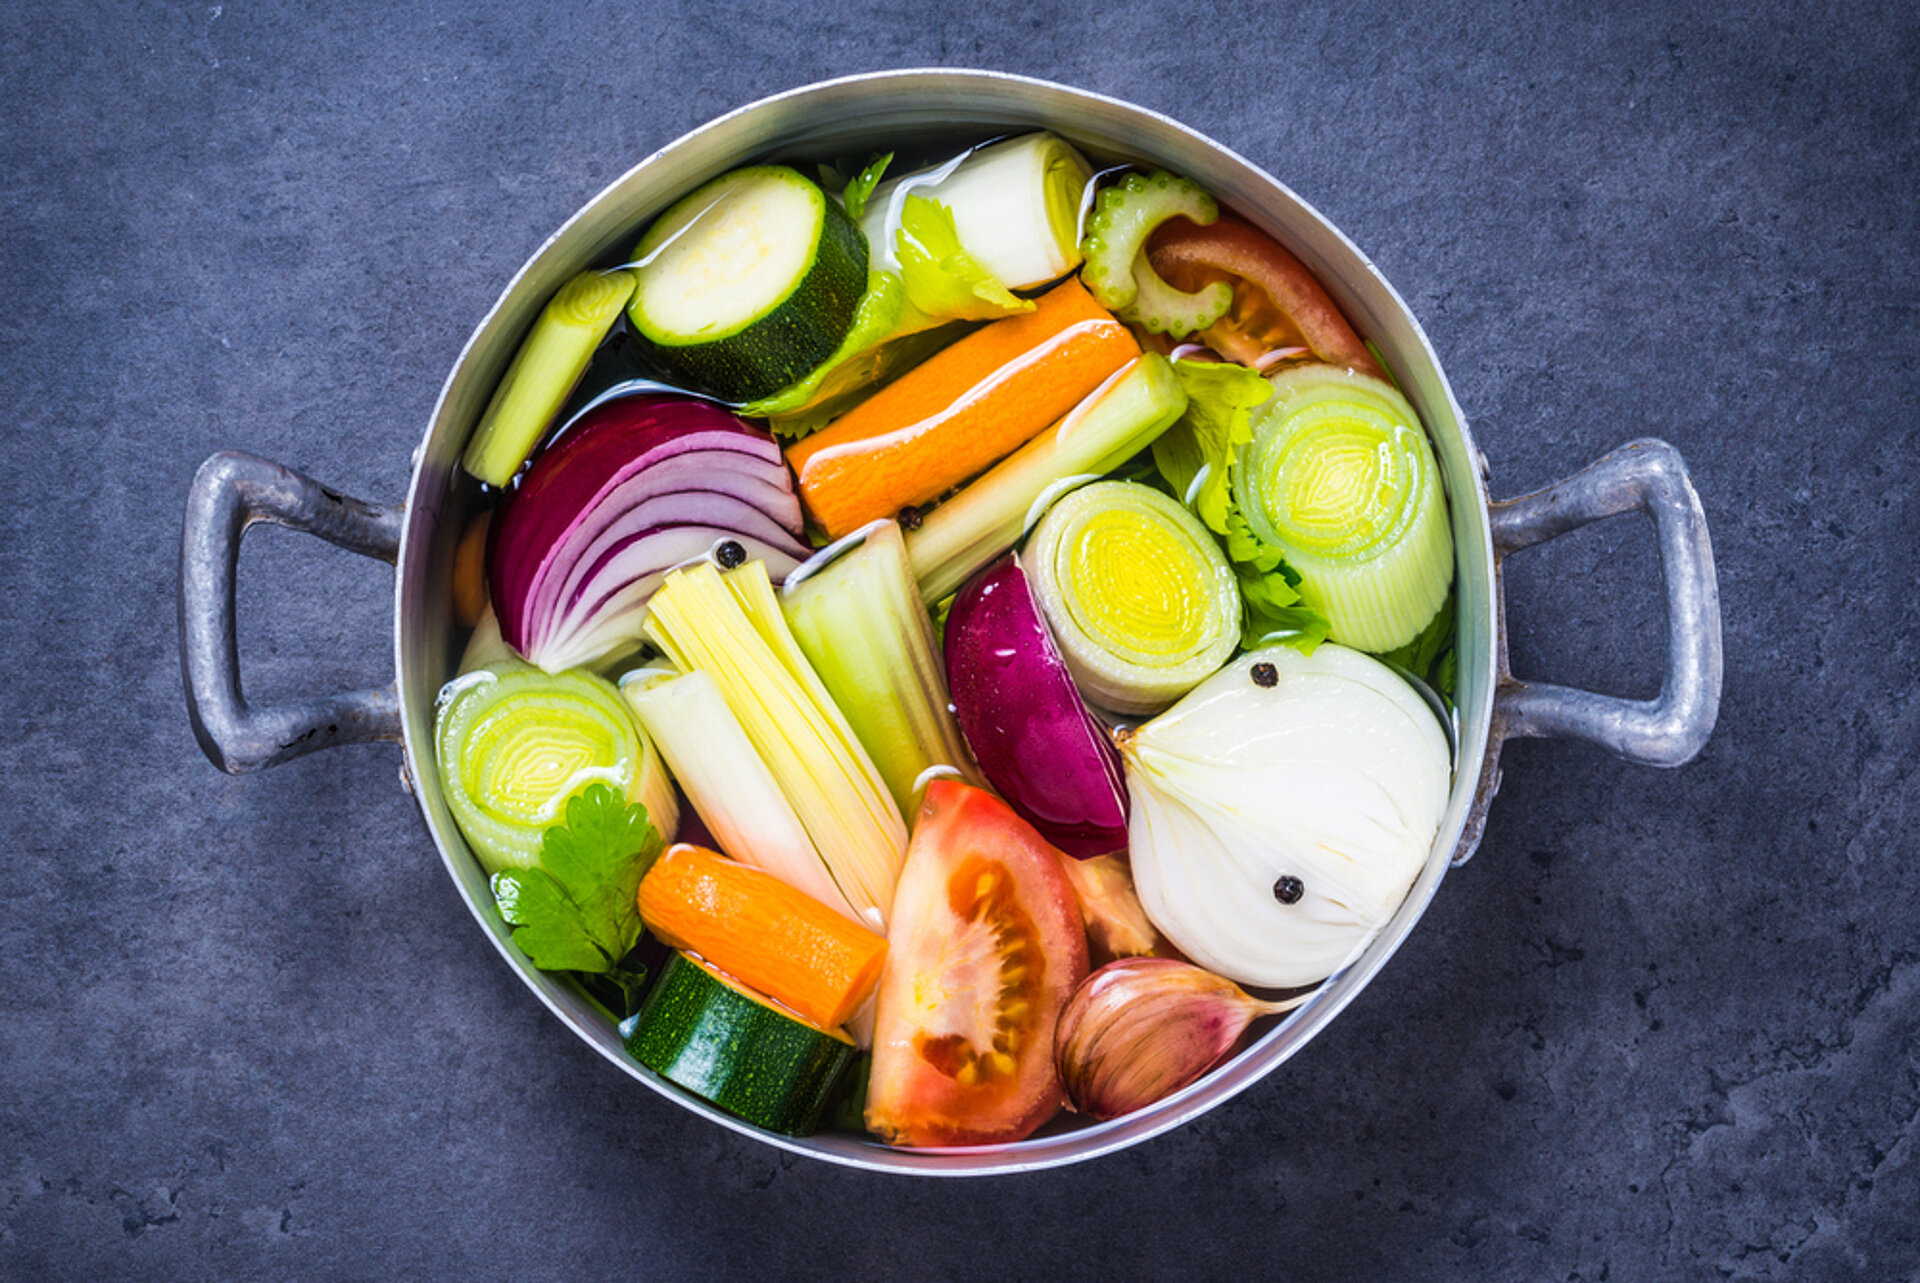 Philadelphia invoegen hooi PuurGezond: Gaan vitamines uit groenten kapot tijdens het koken? En hoe zit  dat met vezels?